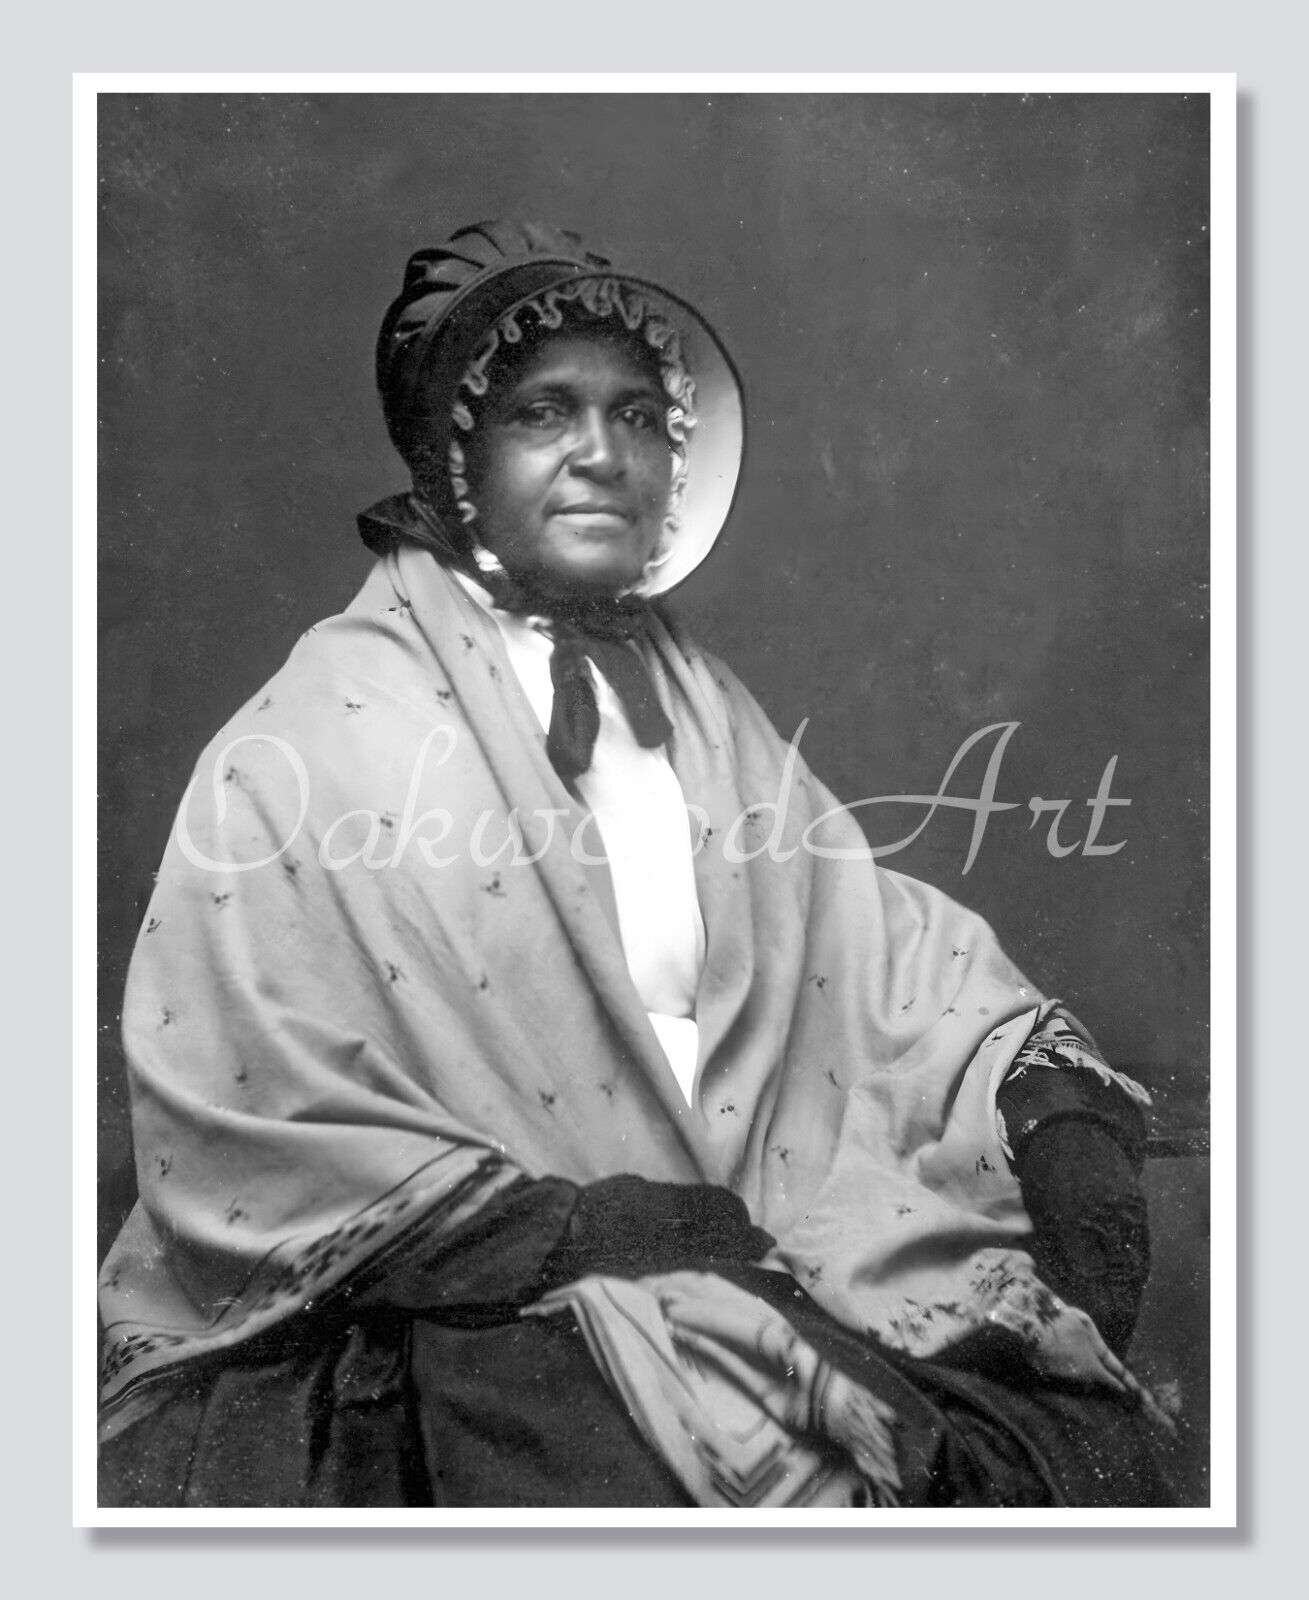 Portrait of a Black Victorian Woman in a Bonnet c1850s, Vintage Photo Reprint